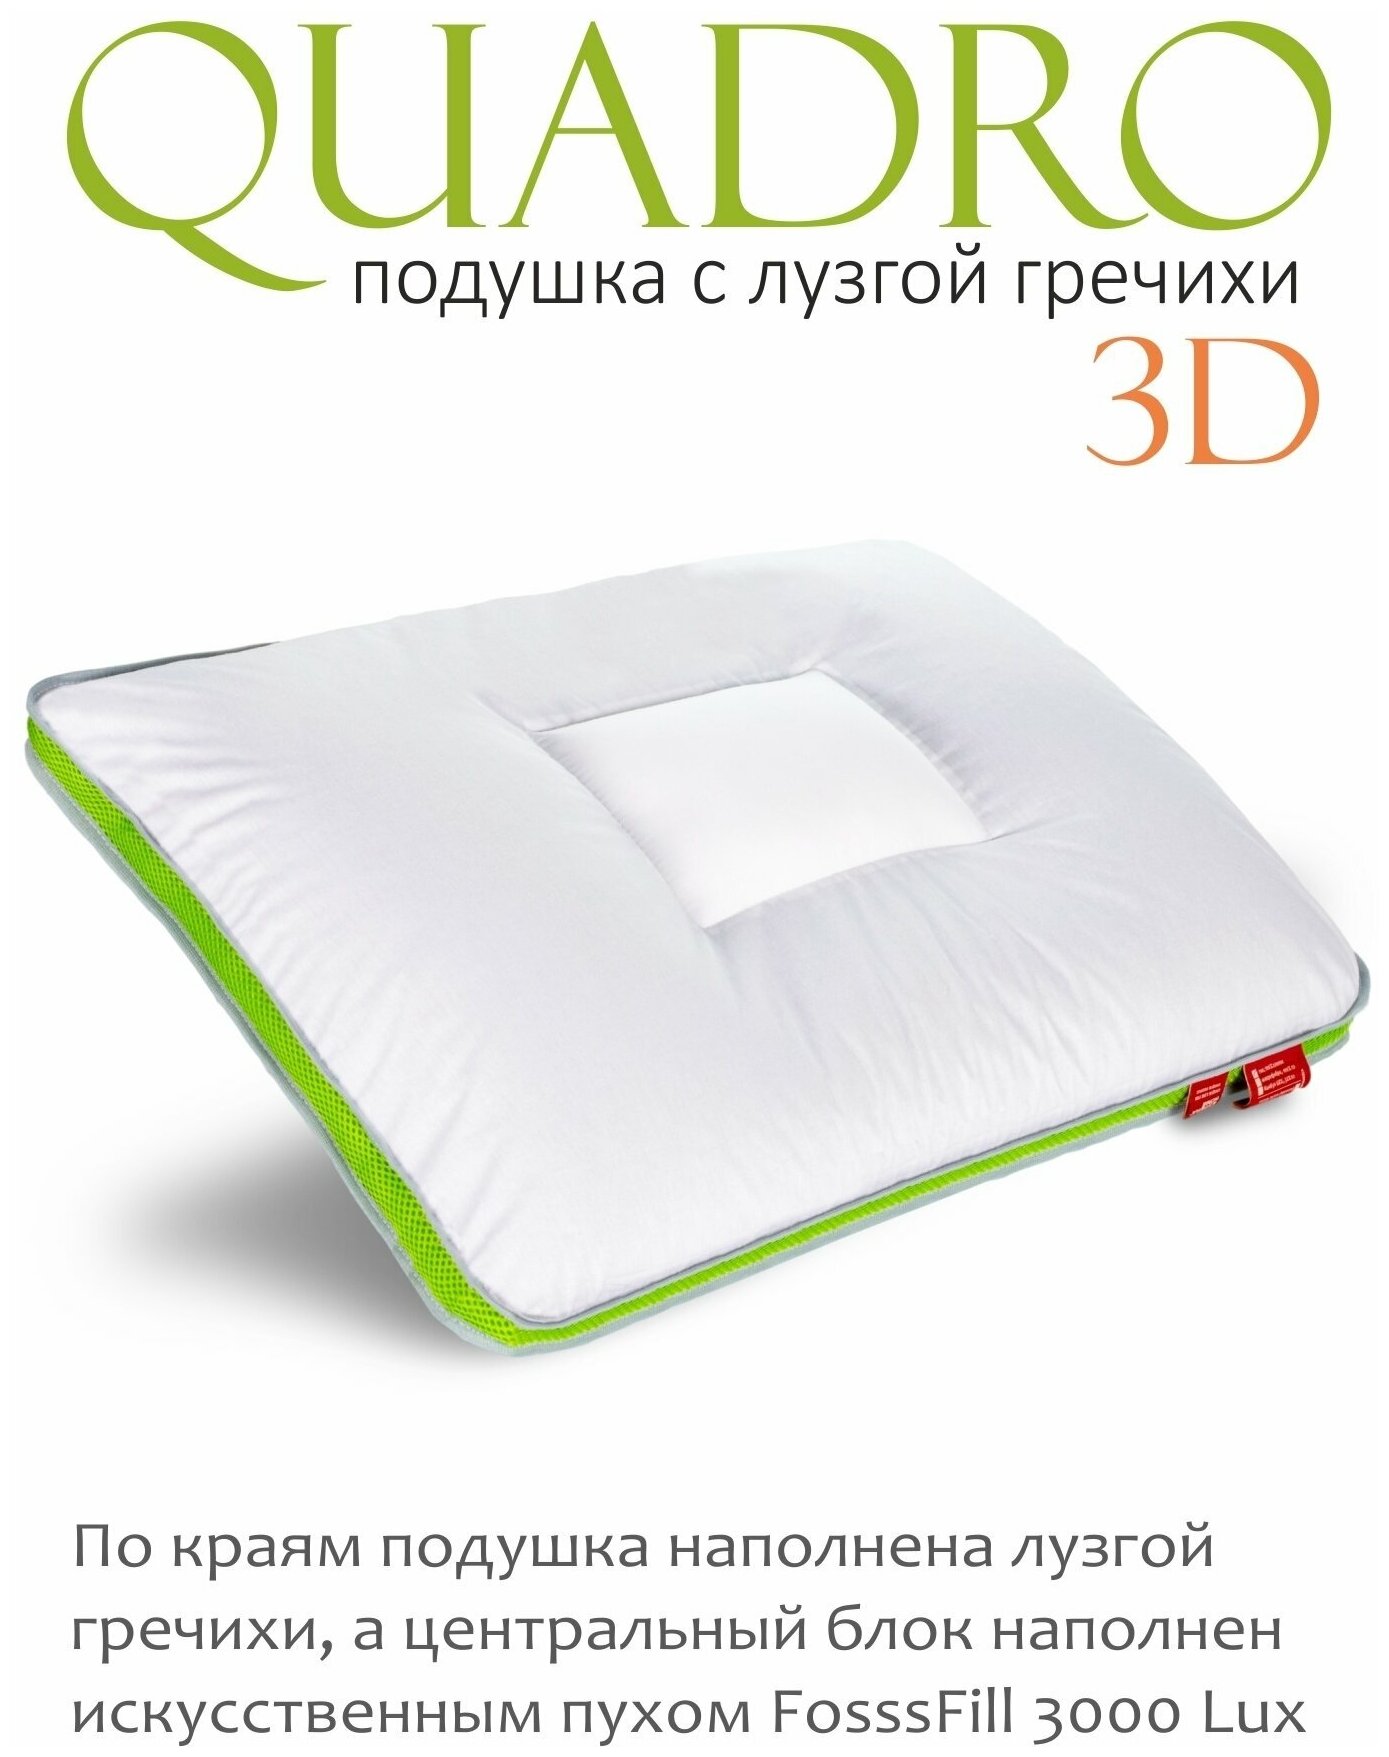 Подушка ESPERA "QUADRO 3D" с лузгой гречихи, 50х70 см, 100% хлопок, цвет белый